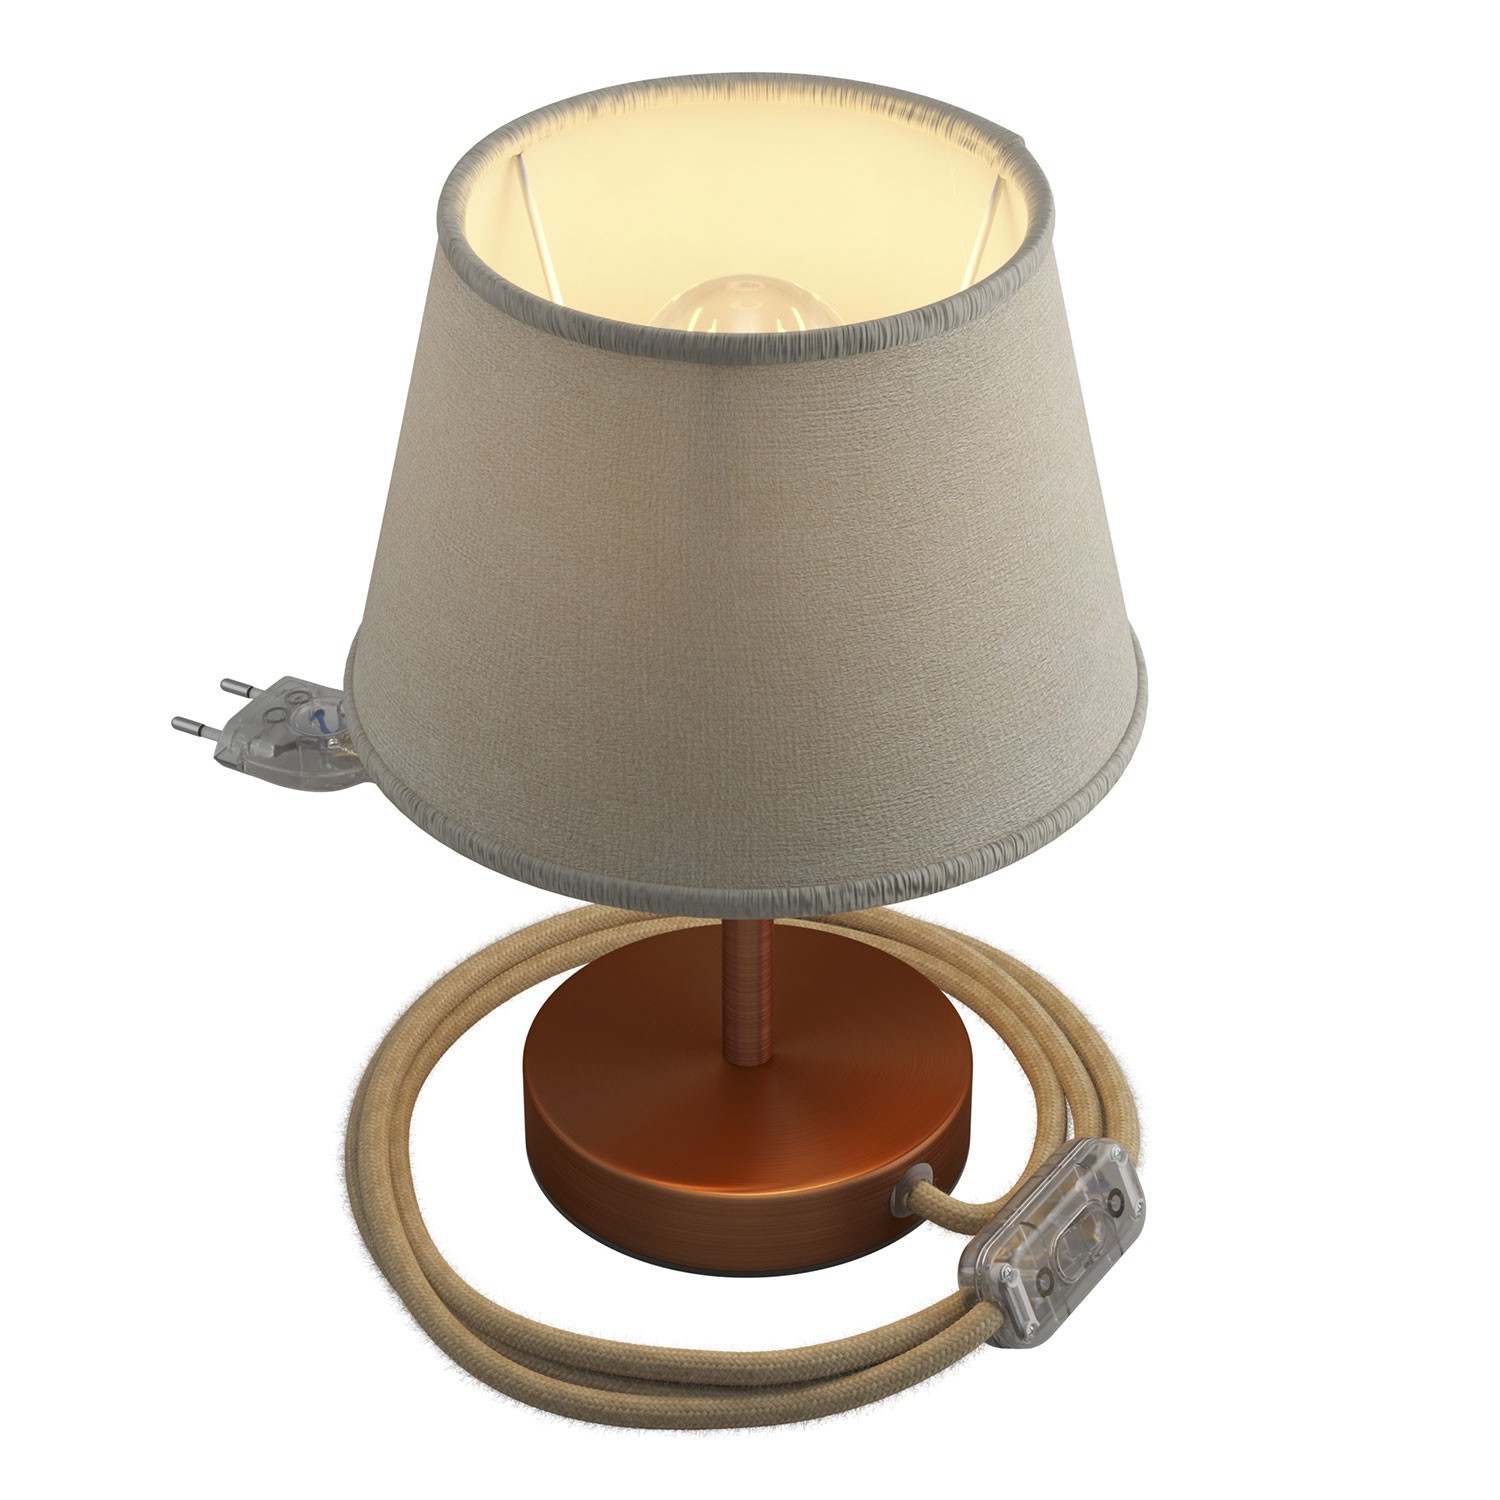 Alzaluce mit Lampenschirm Impero, Tischlampe aus Metall mit 2-poligem Stecker, Kabel und Schalter